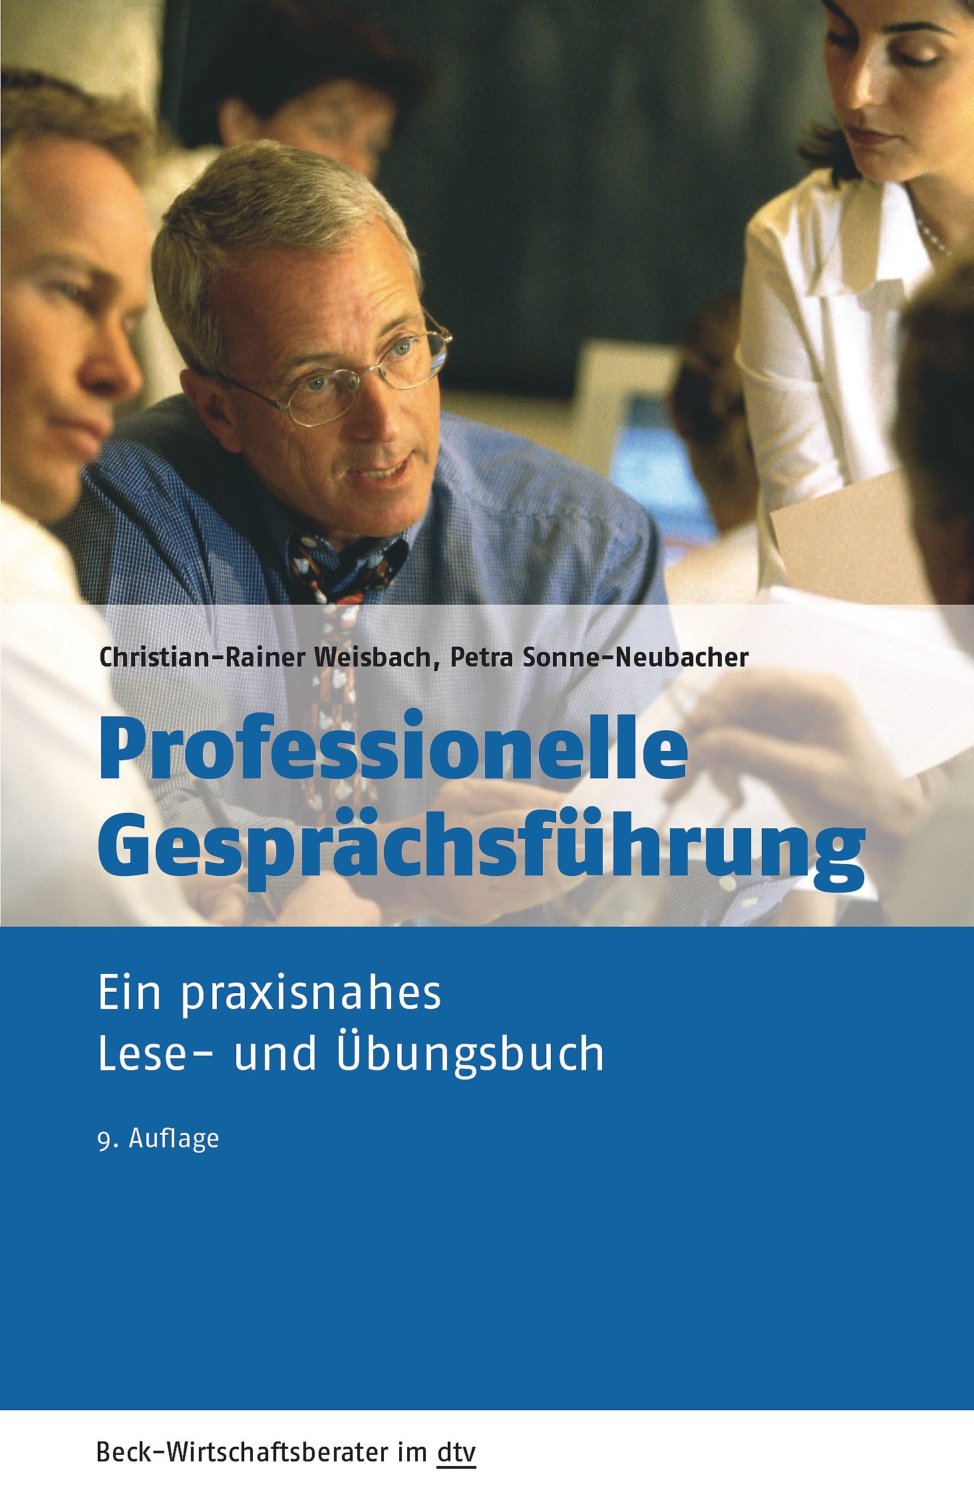 Kommunikationswissen, mit dem sich manch Konflikt lösen lässt: "Professionelle Gesprächsführung" von Christian-Rainer Weisbach (Amazon)